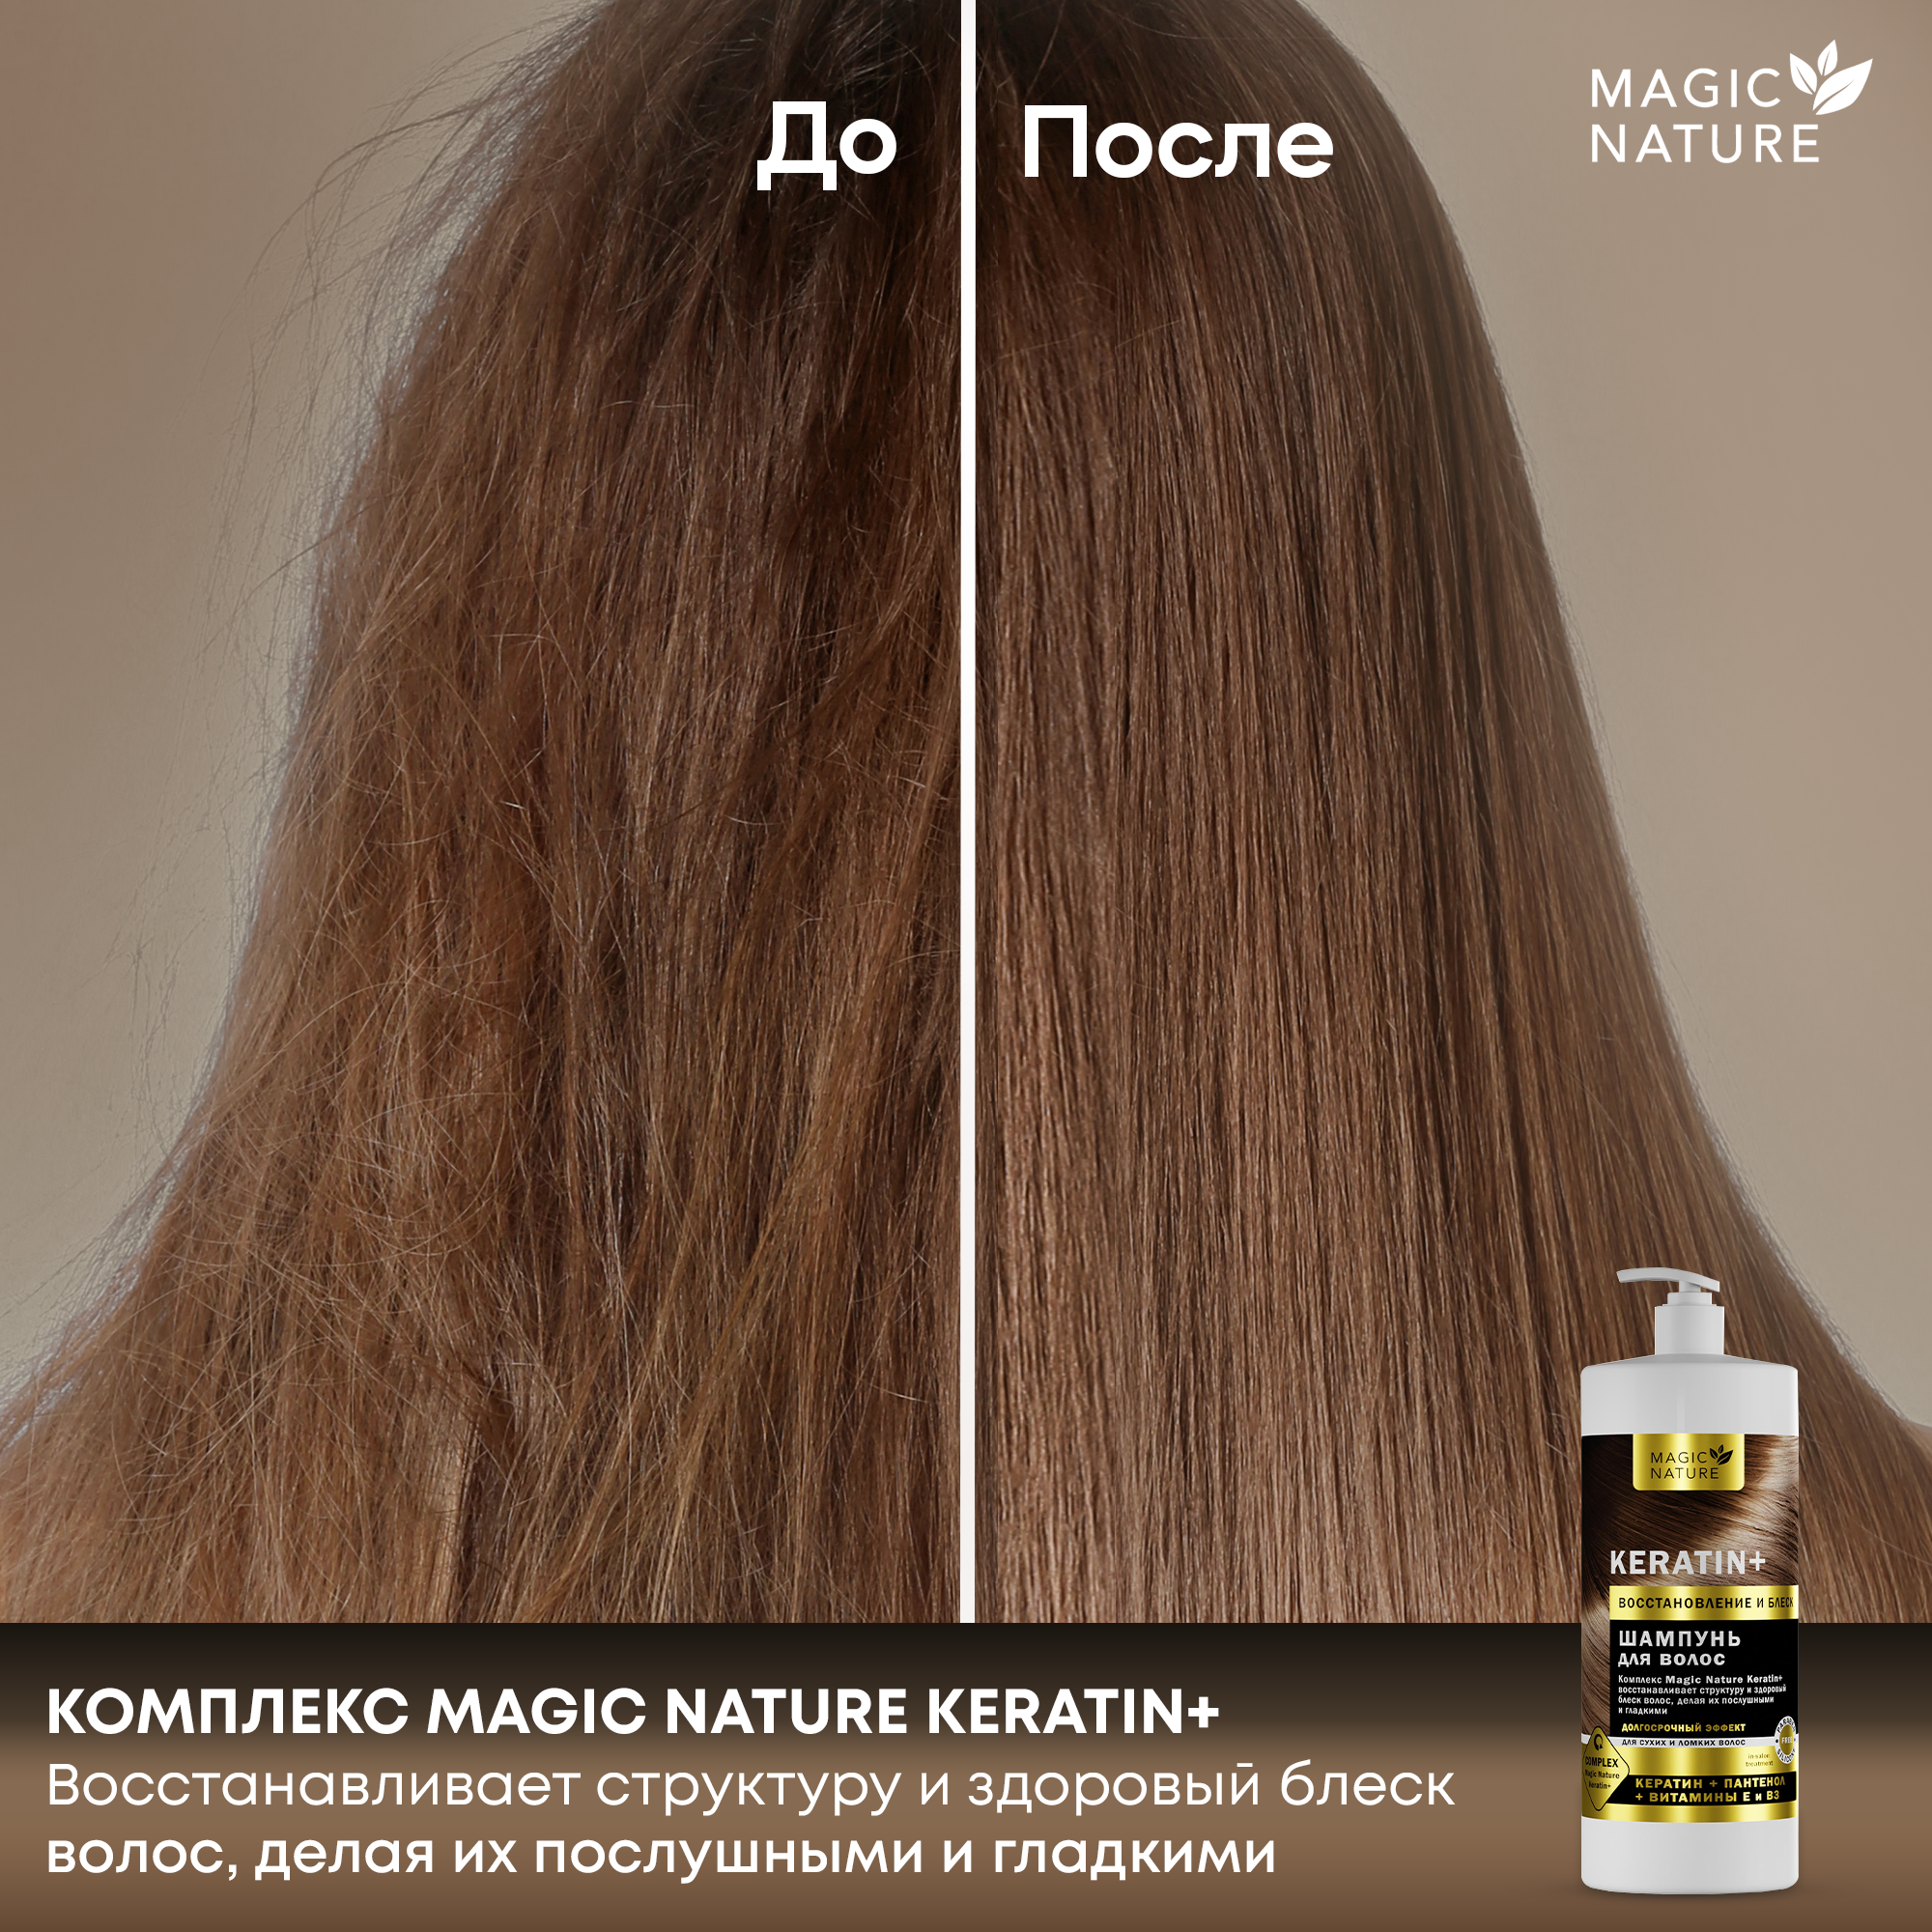 MAGIC NATURE Шампунь для волос KERATIN+ с кератином, восстановление и блеск, для роста волос, 1000 мл